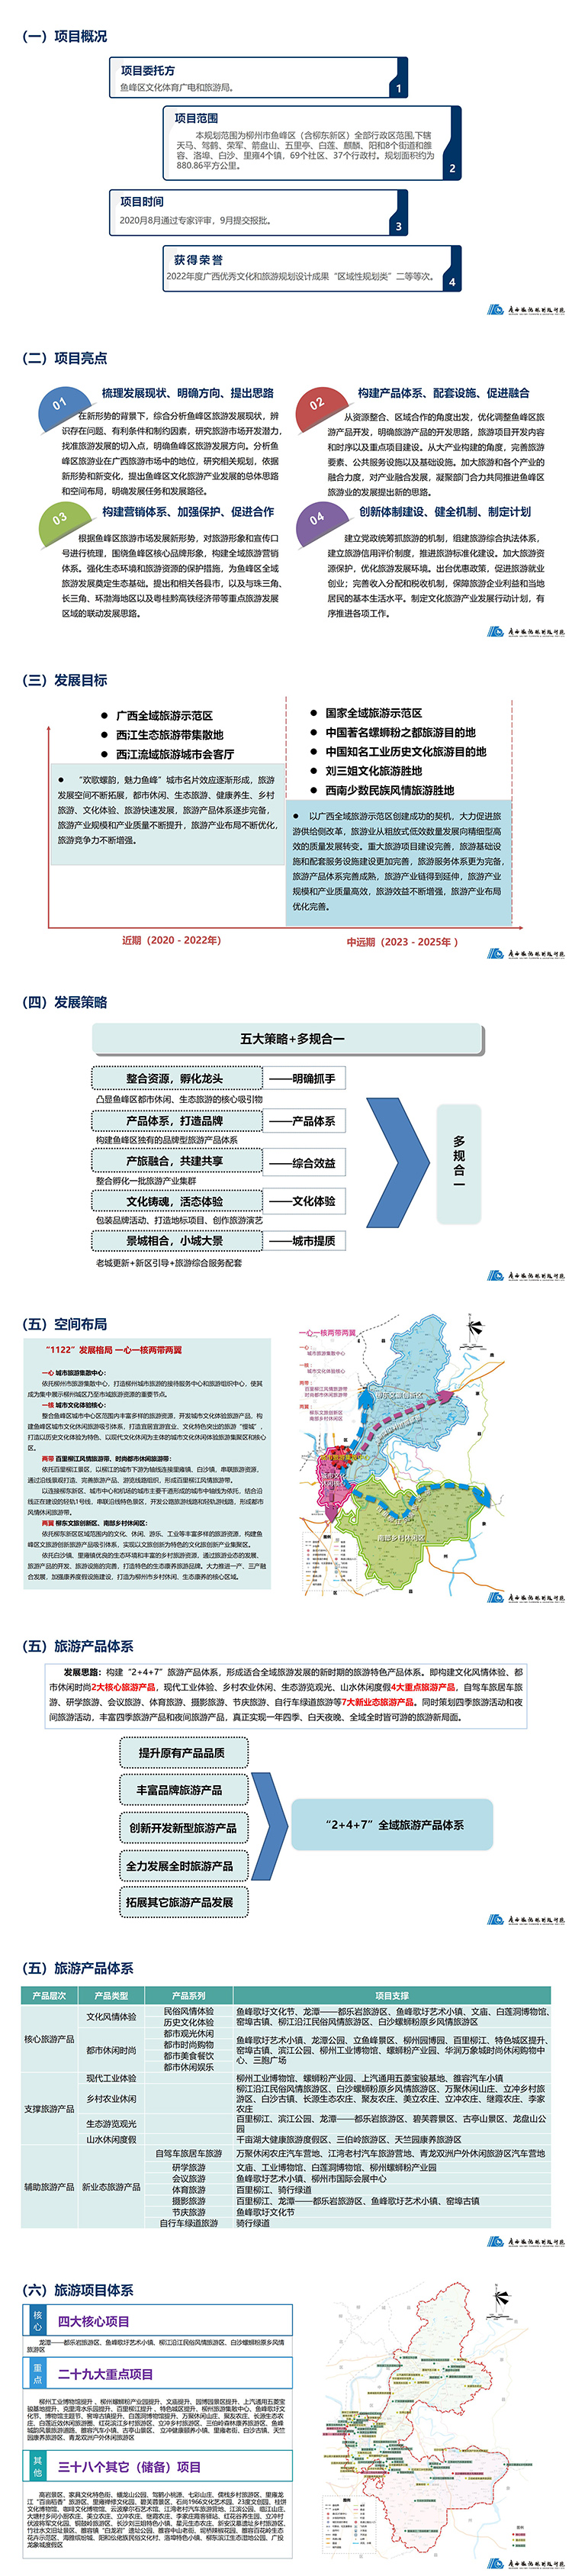 柳州市鱼峰区全域旅行发展规划项目总结-2023.5.3 - 副本_01.jpg